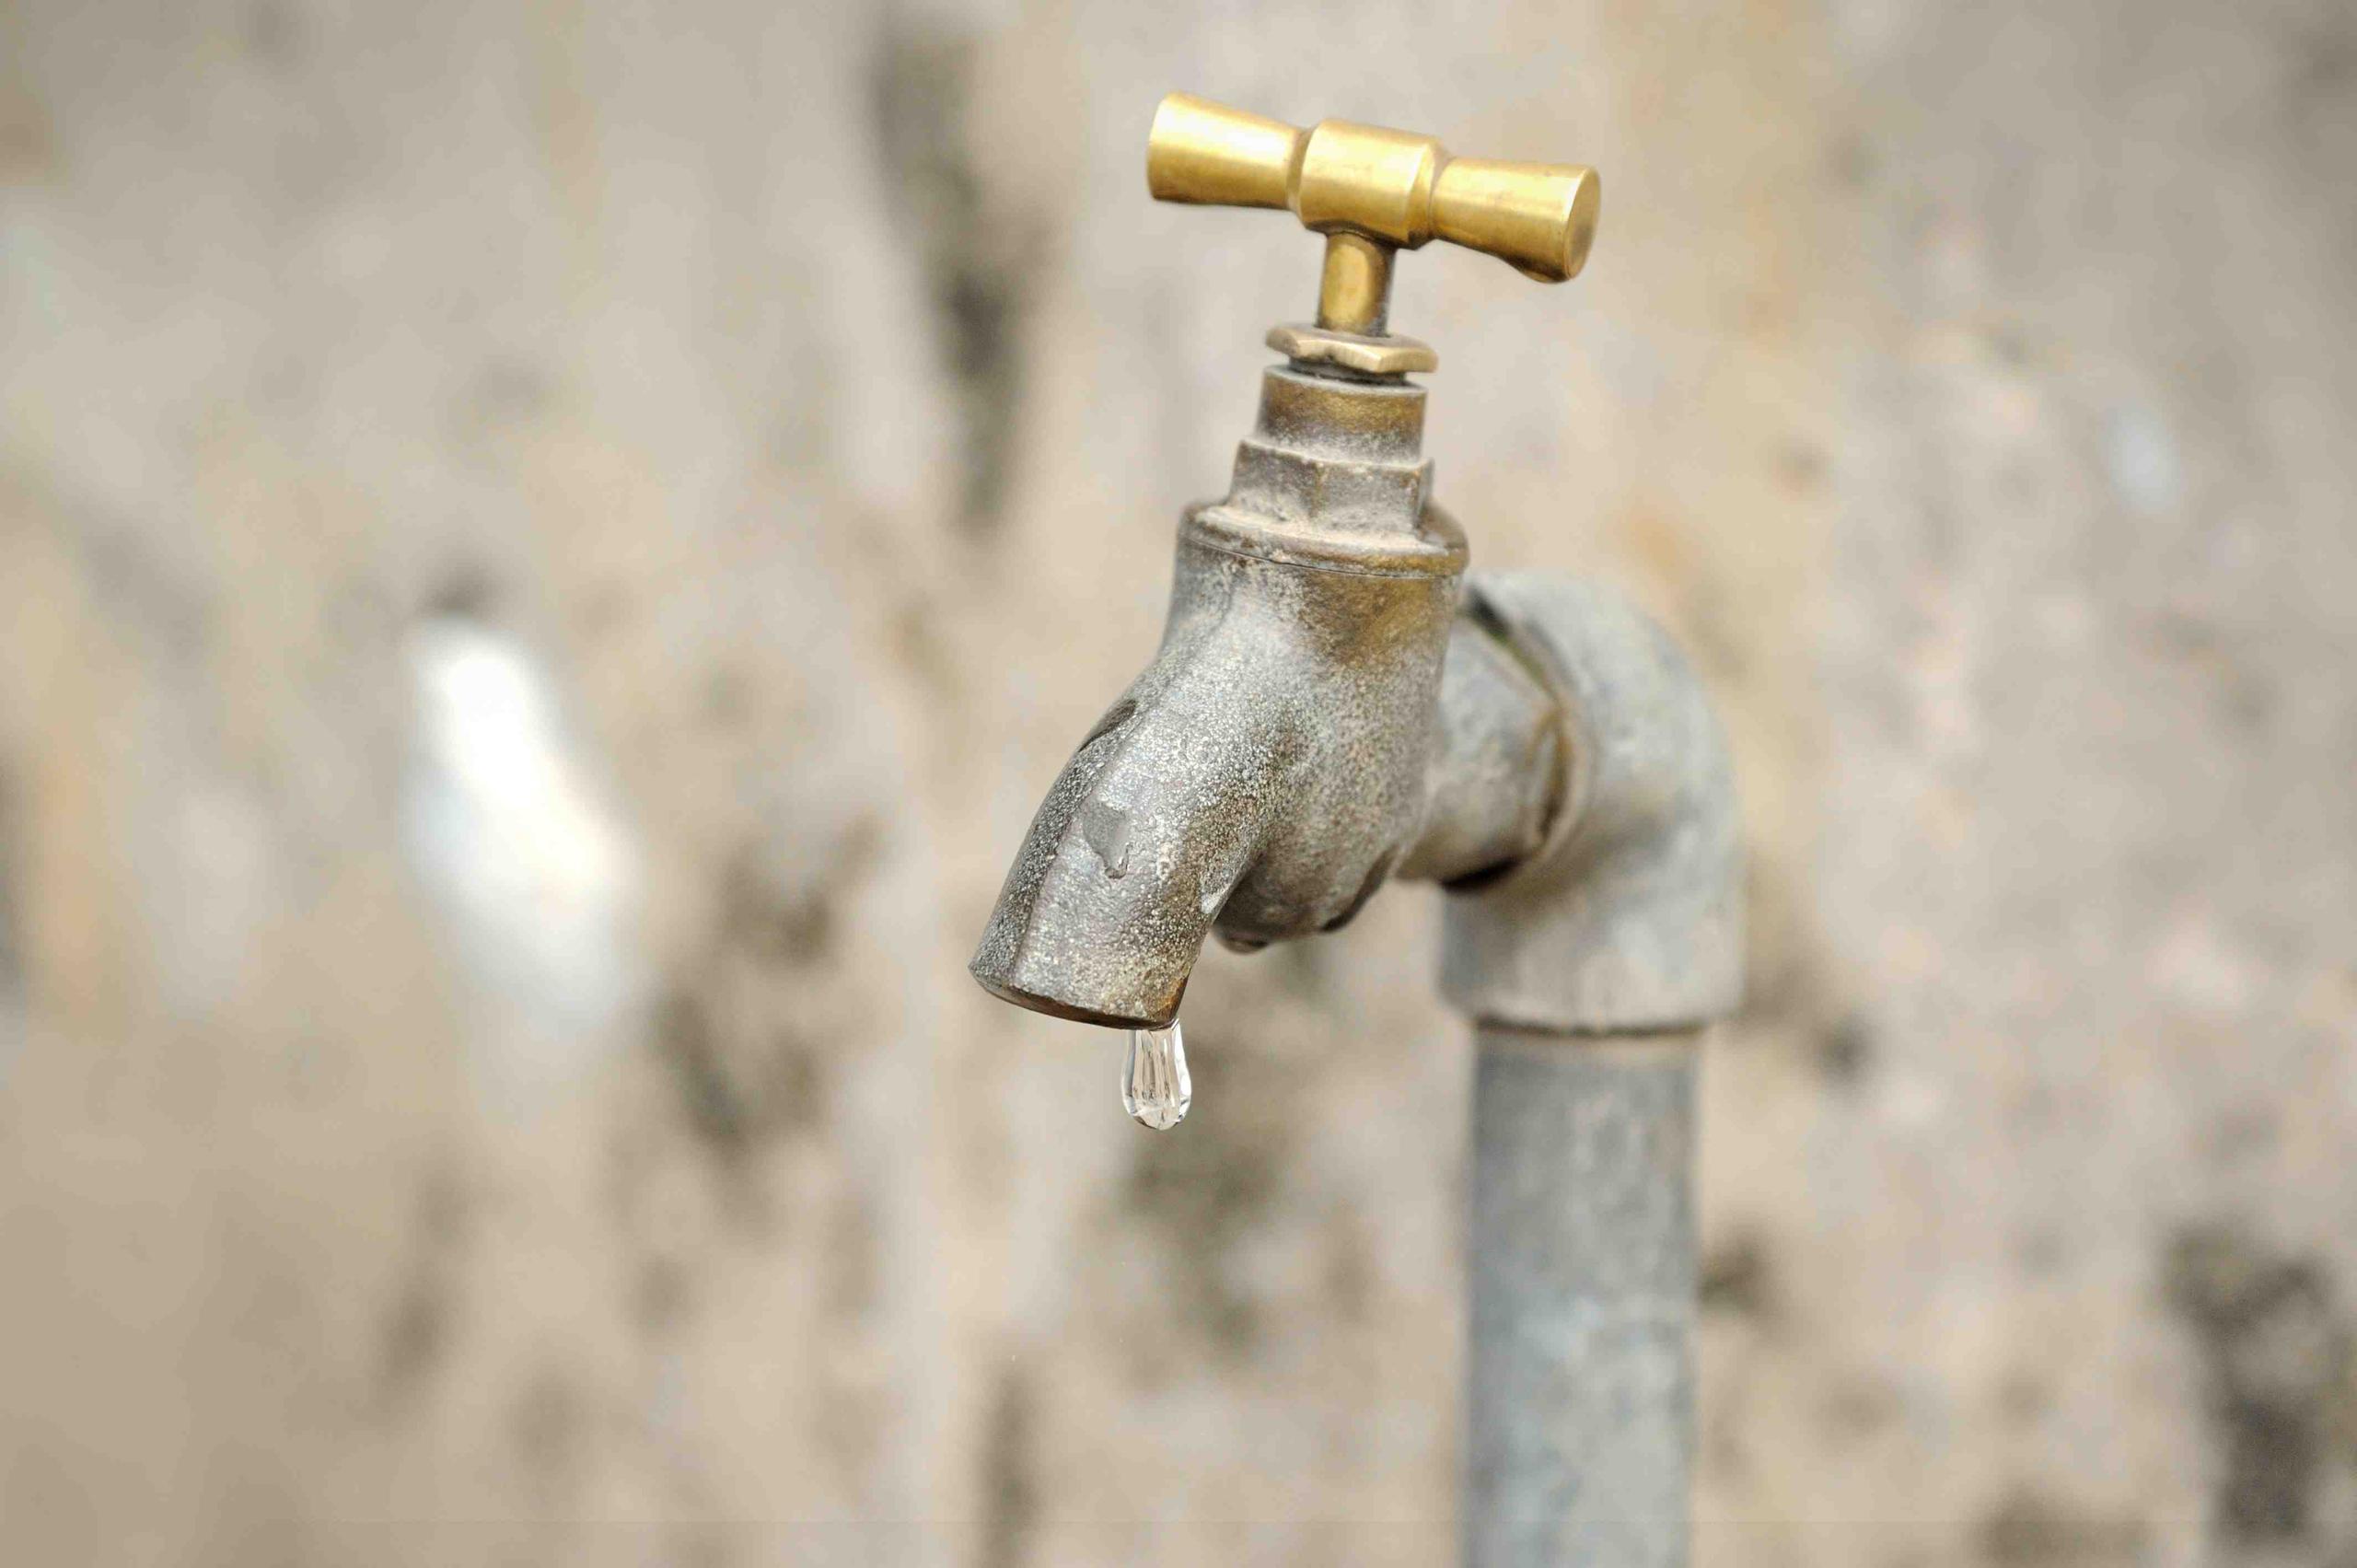 Antes de su consumo, el agua debe ser filtrada con un paño para eliminar cualquier partícula presente. (Shutterstock.com)